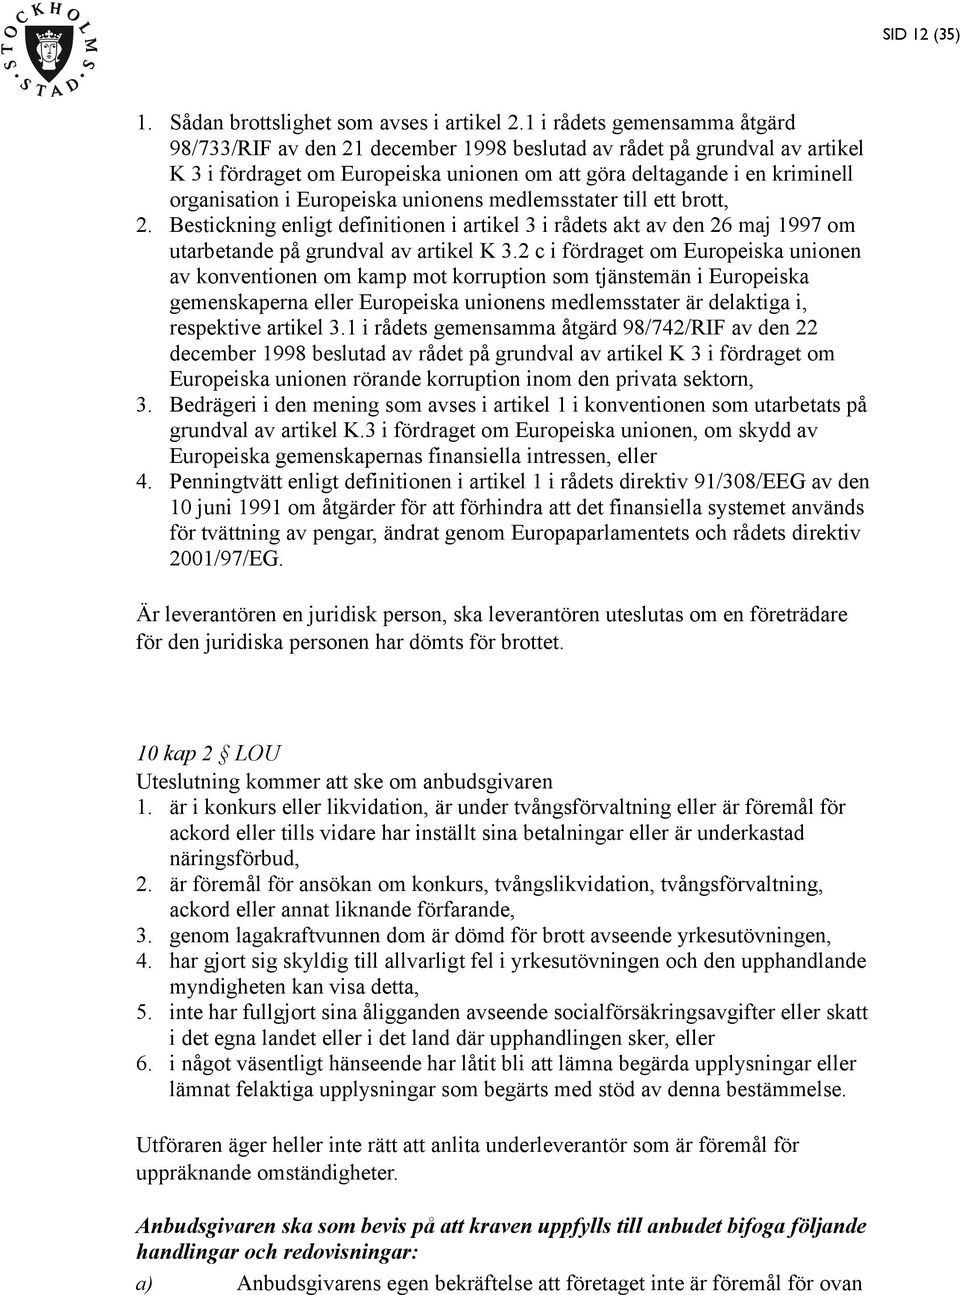 Europeiska unionens medlemsstater till ett brott, 2. Bestickning enligt definitionen i artikel 3 i rådets akt av den 26 maj 1997 om utarbetande på grundval av artikel K 3.